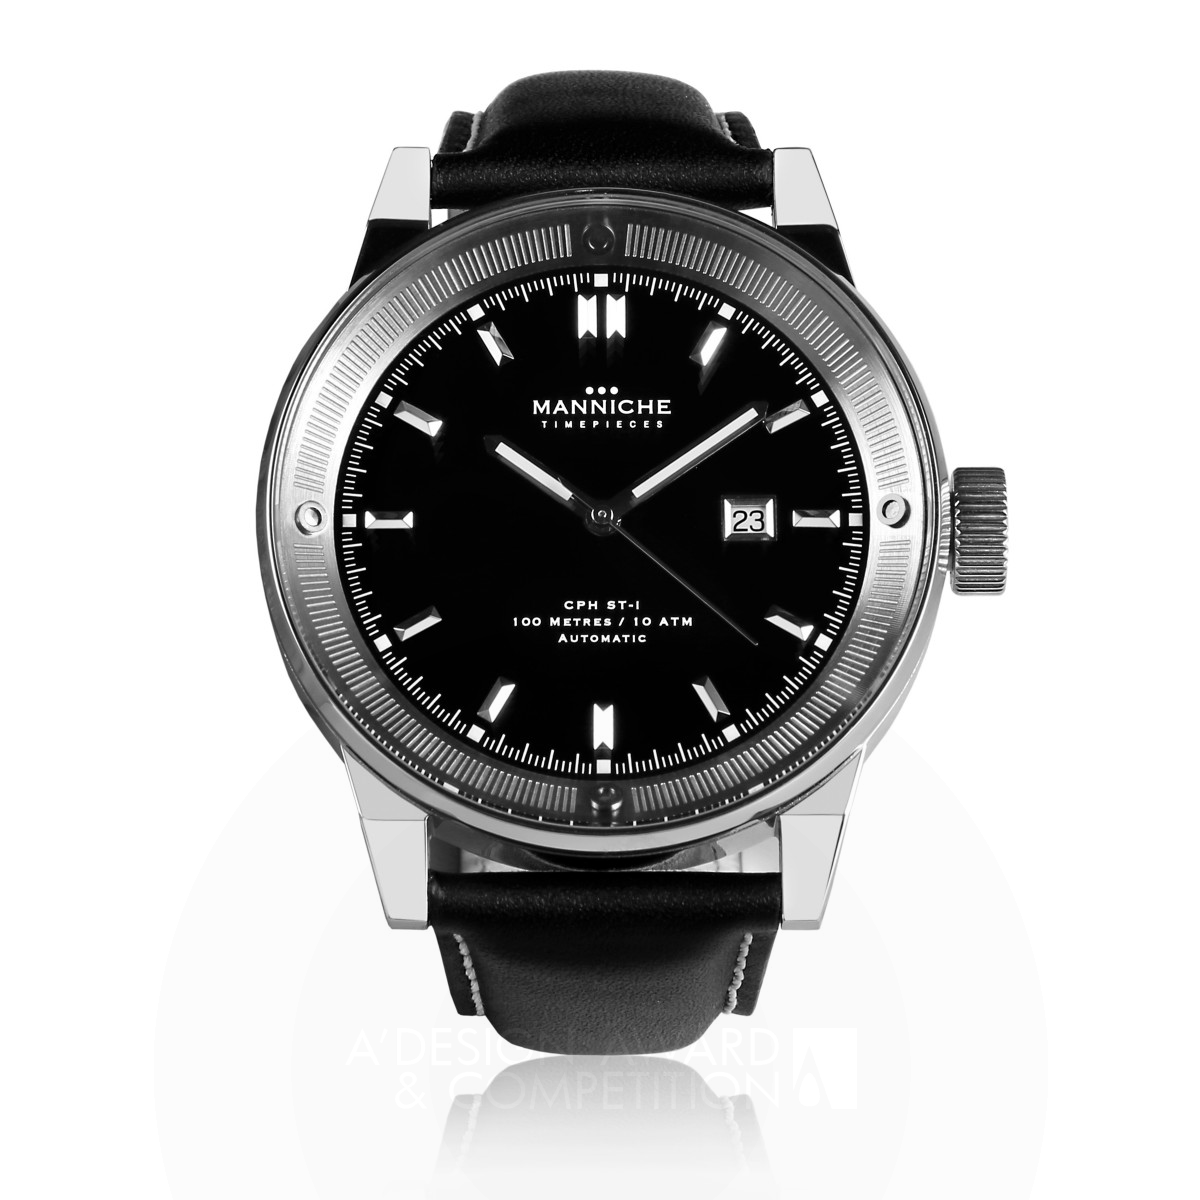 Cph st-1 Watch by Manniche Timepieces